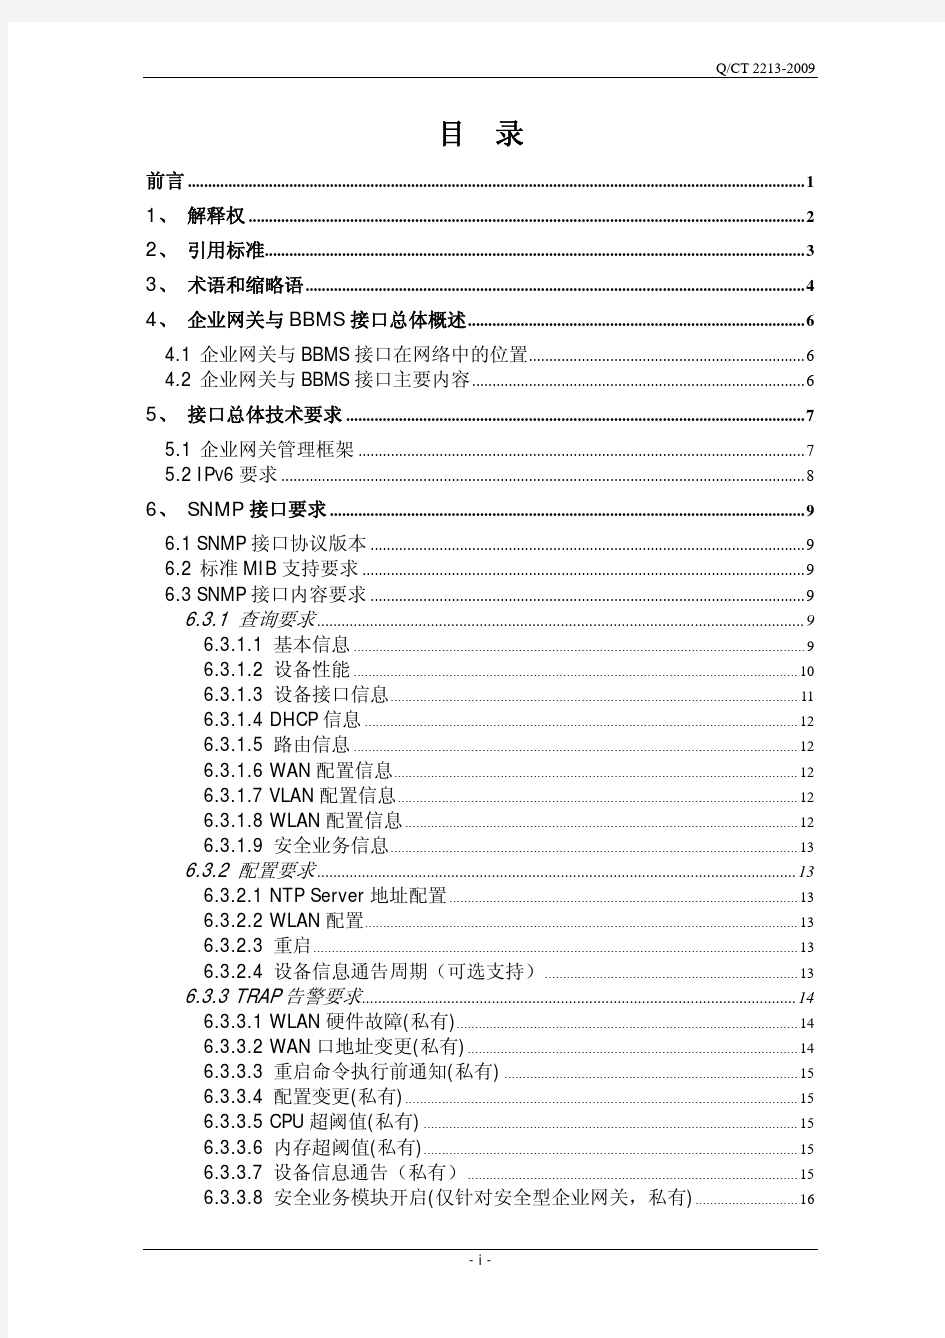 中国电信企业网关管理系统技术规格说明书V2.0-南向接口